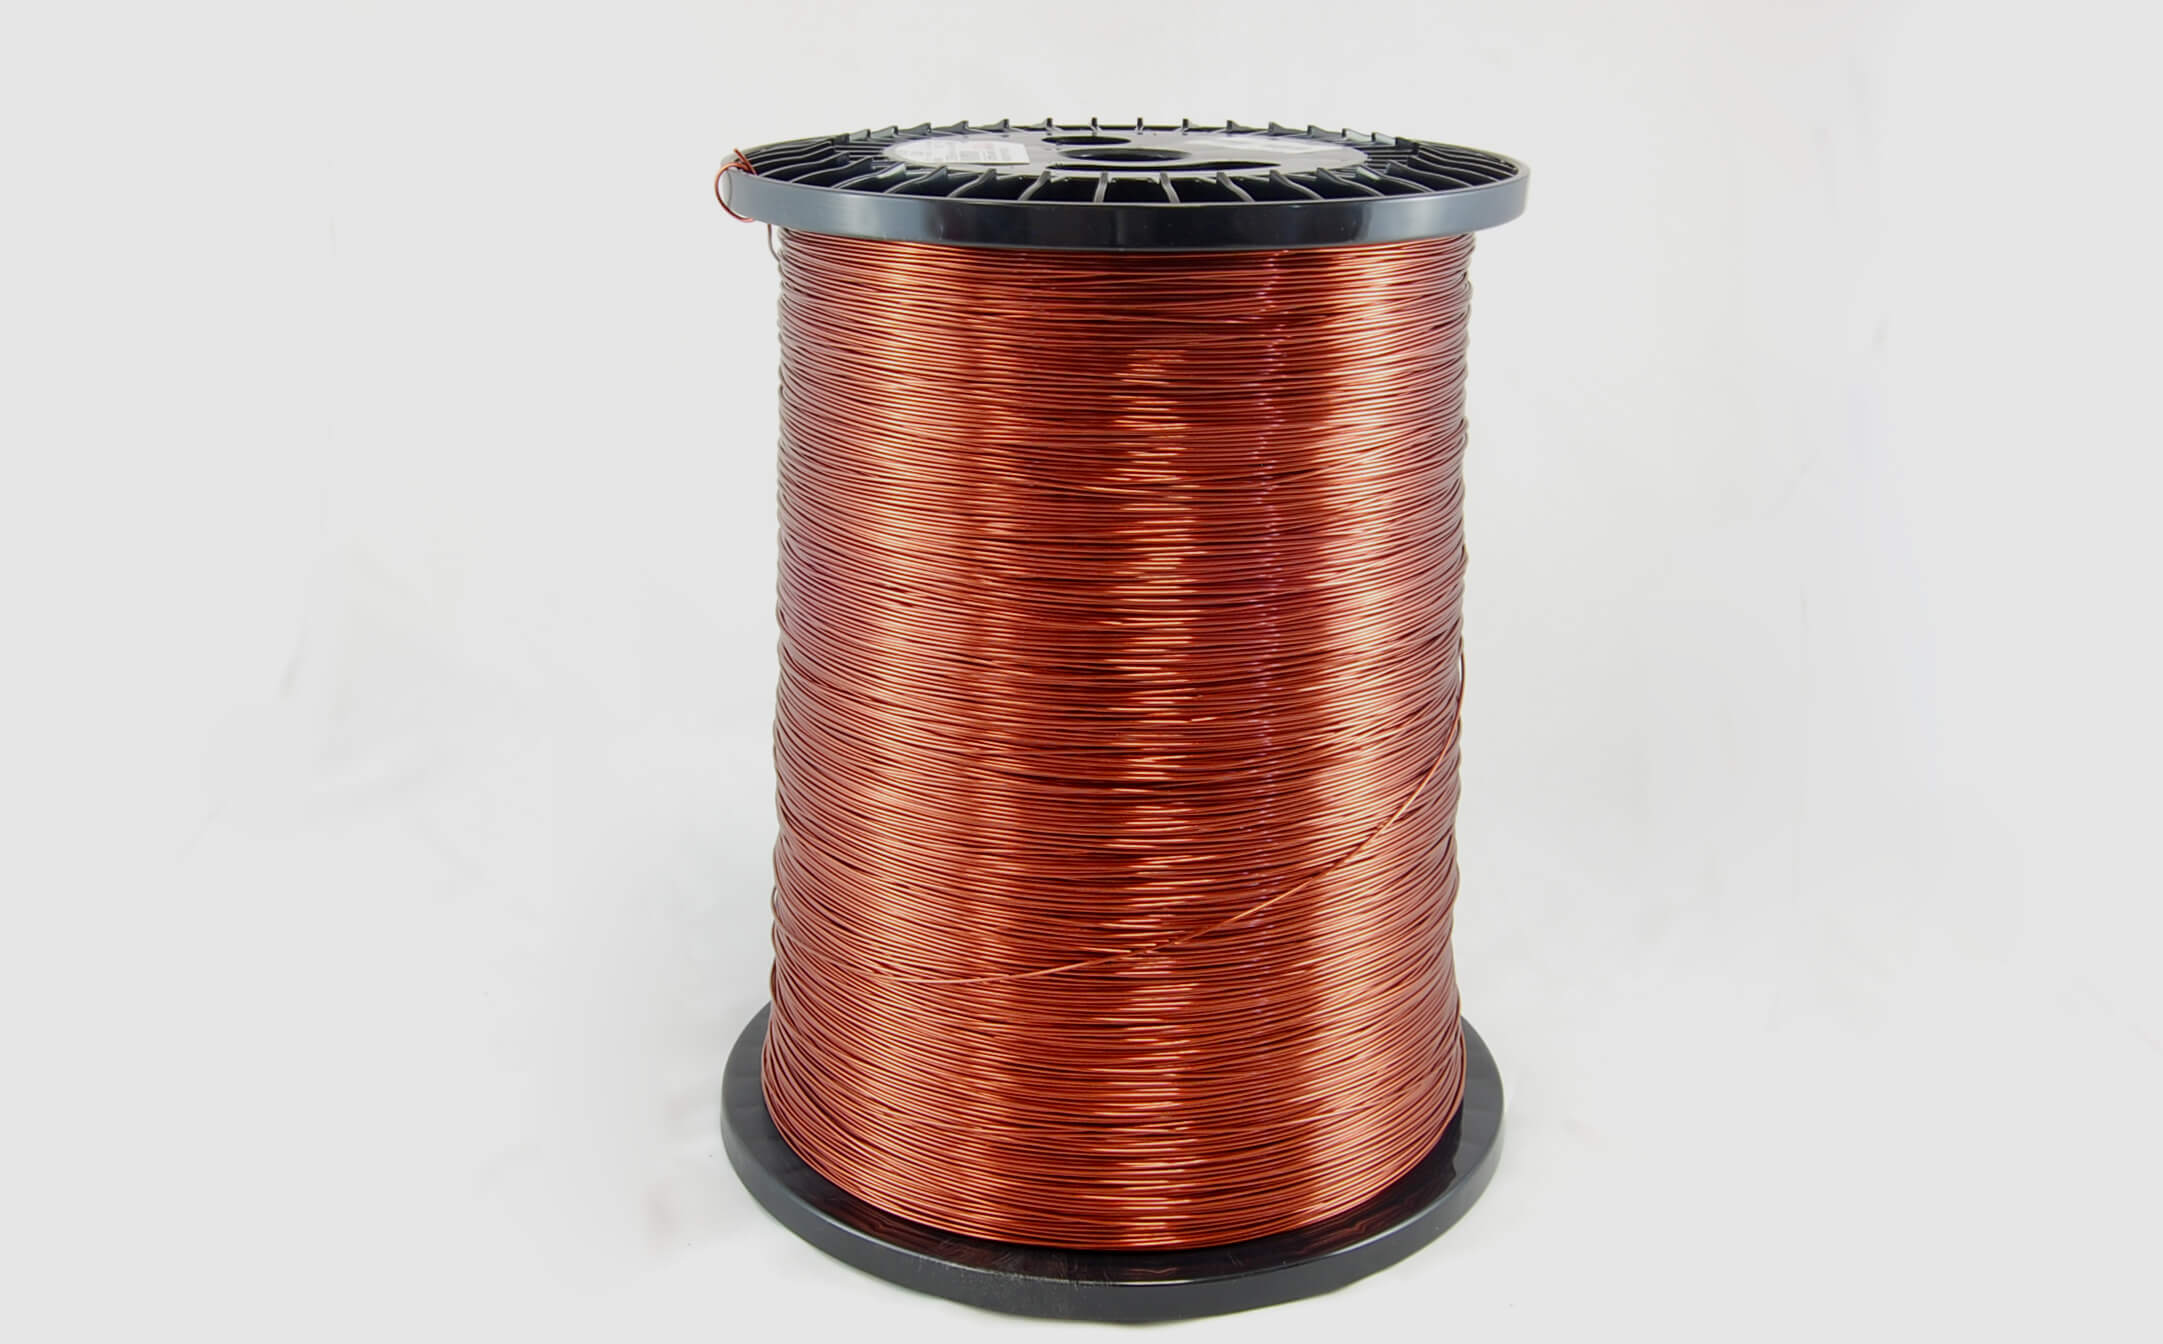 #17 Heavy Super Hyslik 200 Round HTAIH MW 35 Copper Magnet Wire 200°C, copper, 85 LB pail (average wght.)